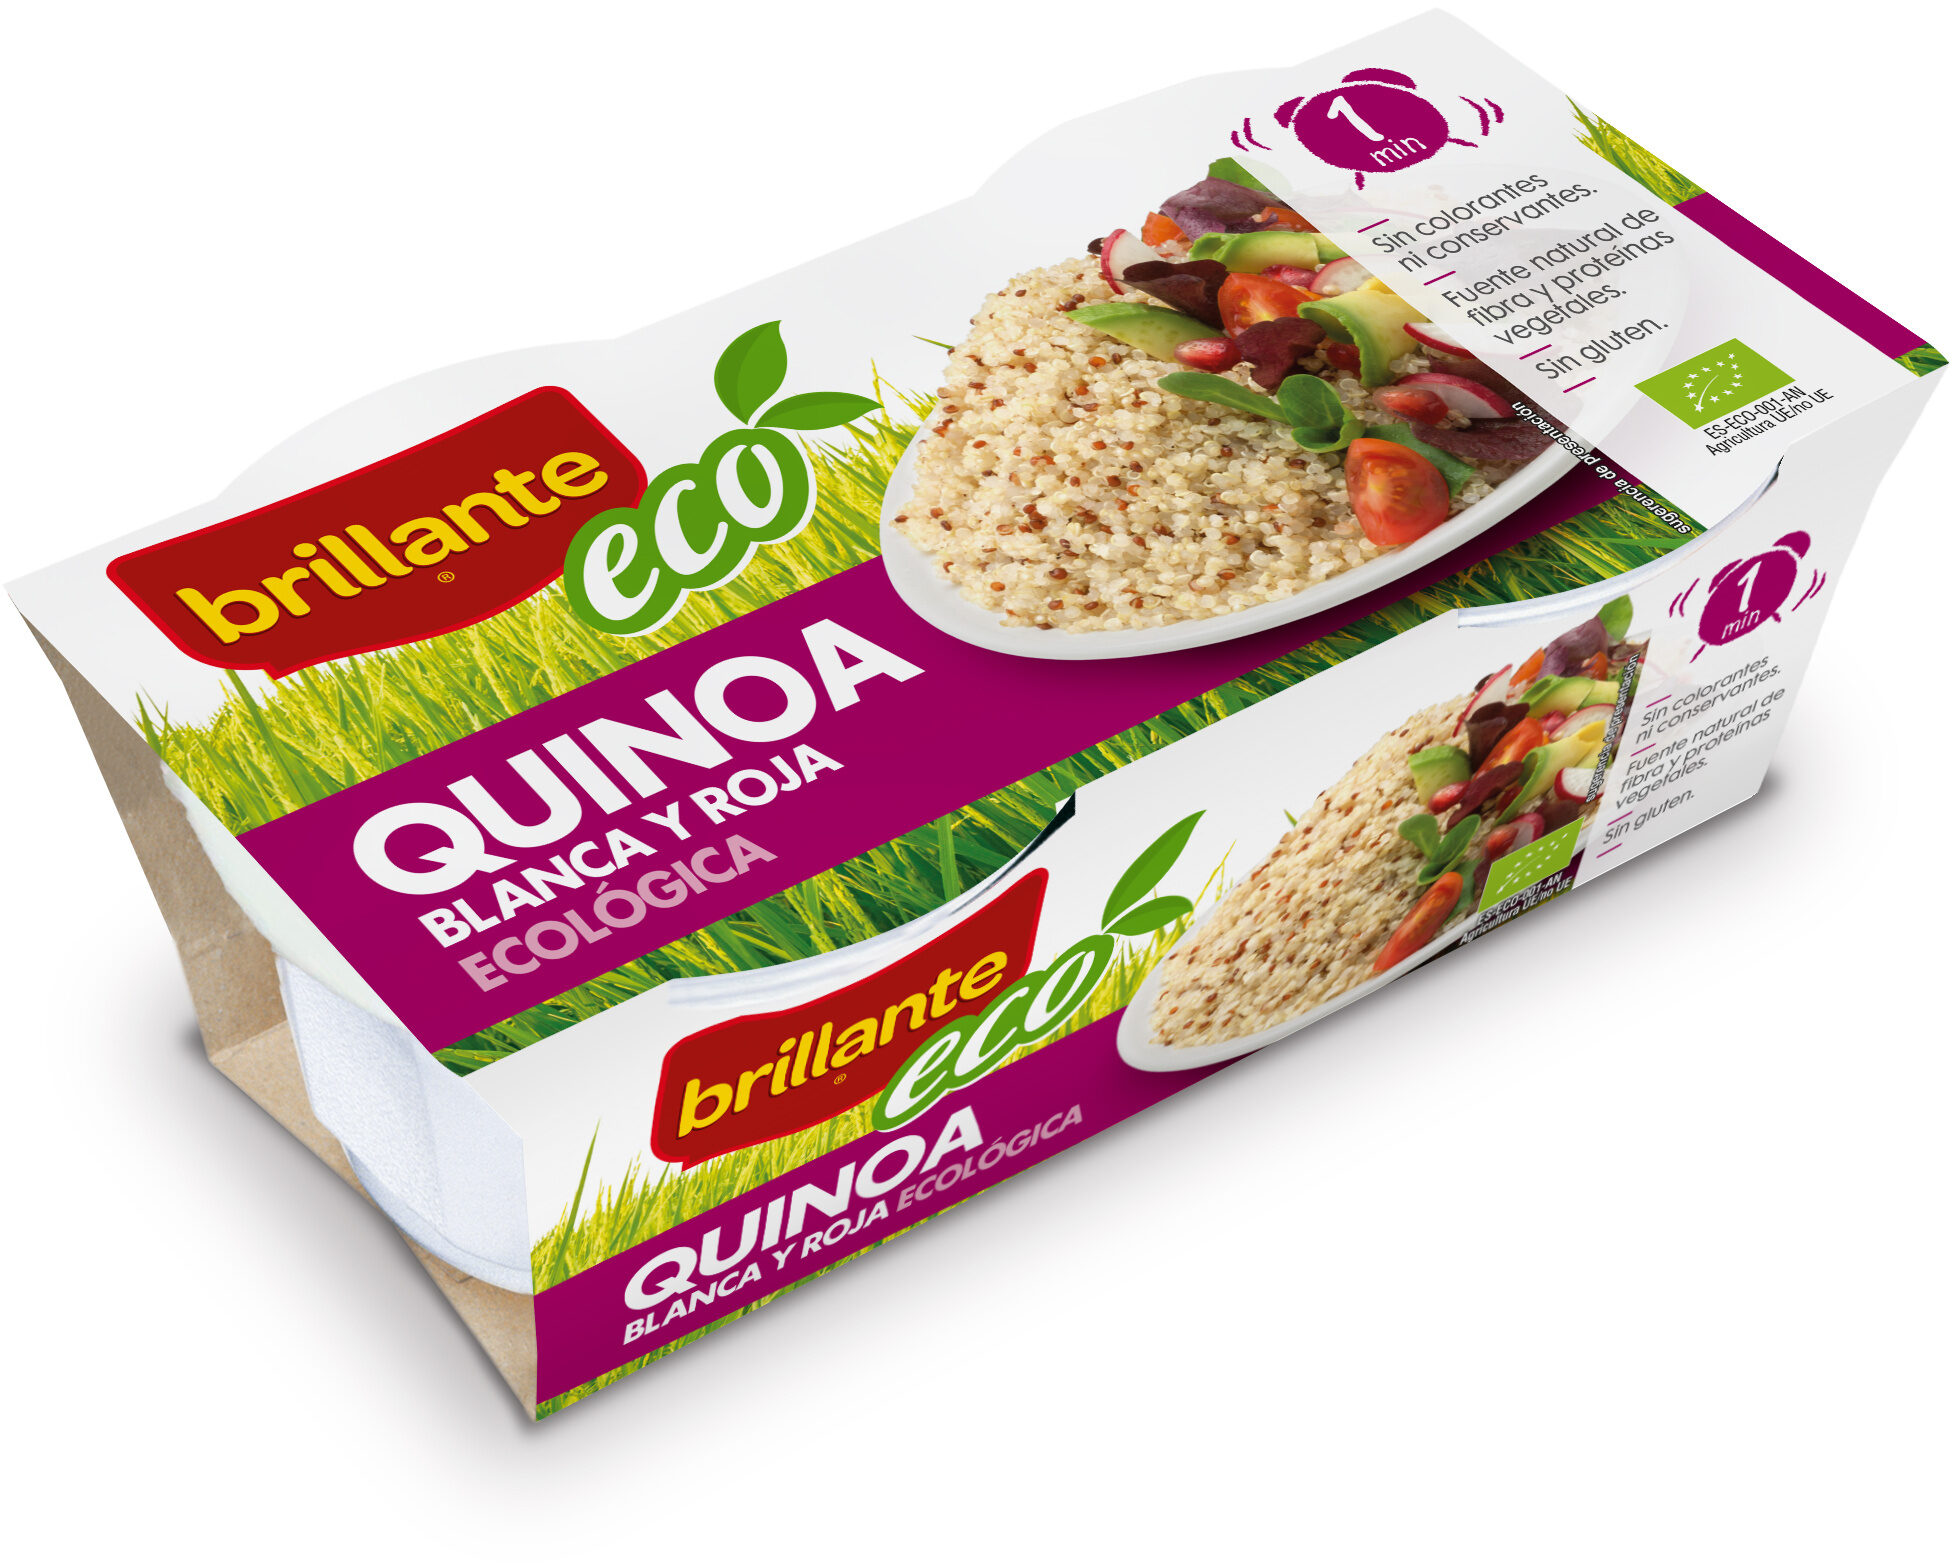 Quinoa blanca y roja ecológica pack 2 envase 125 g - Producto